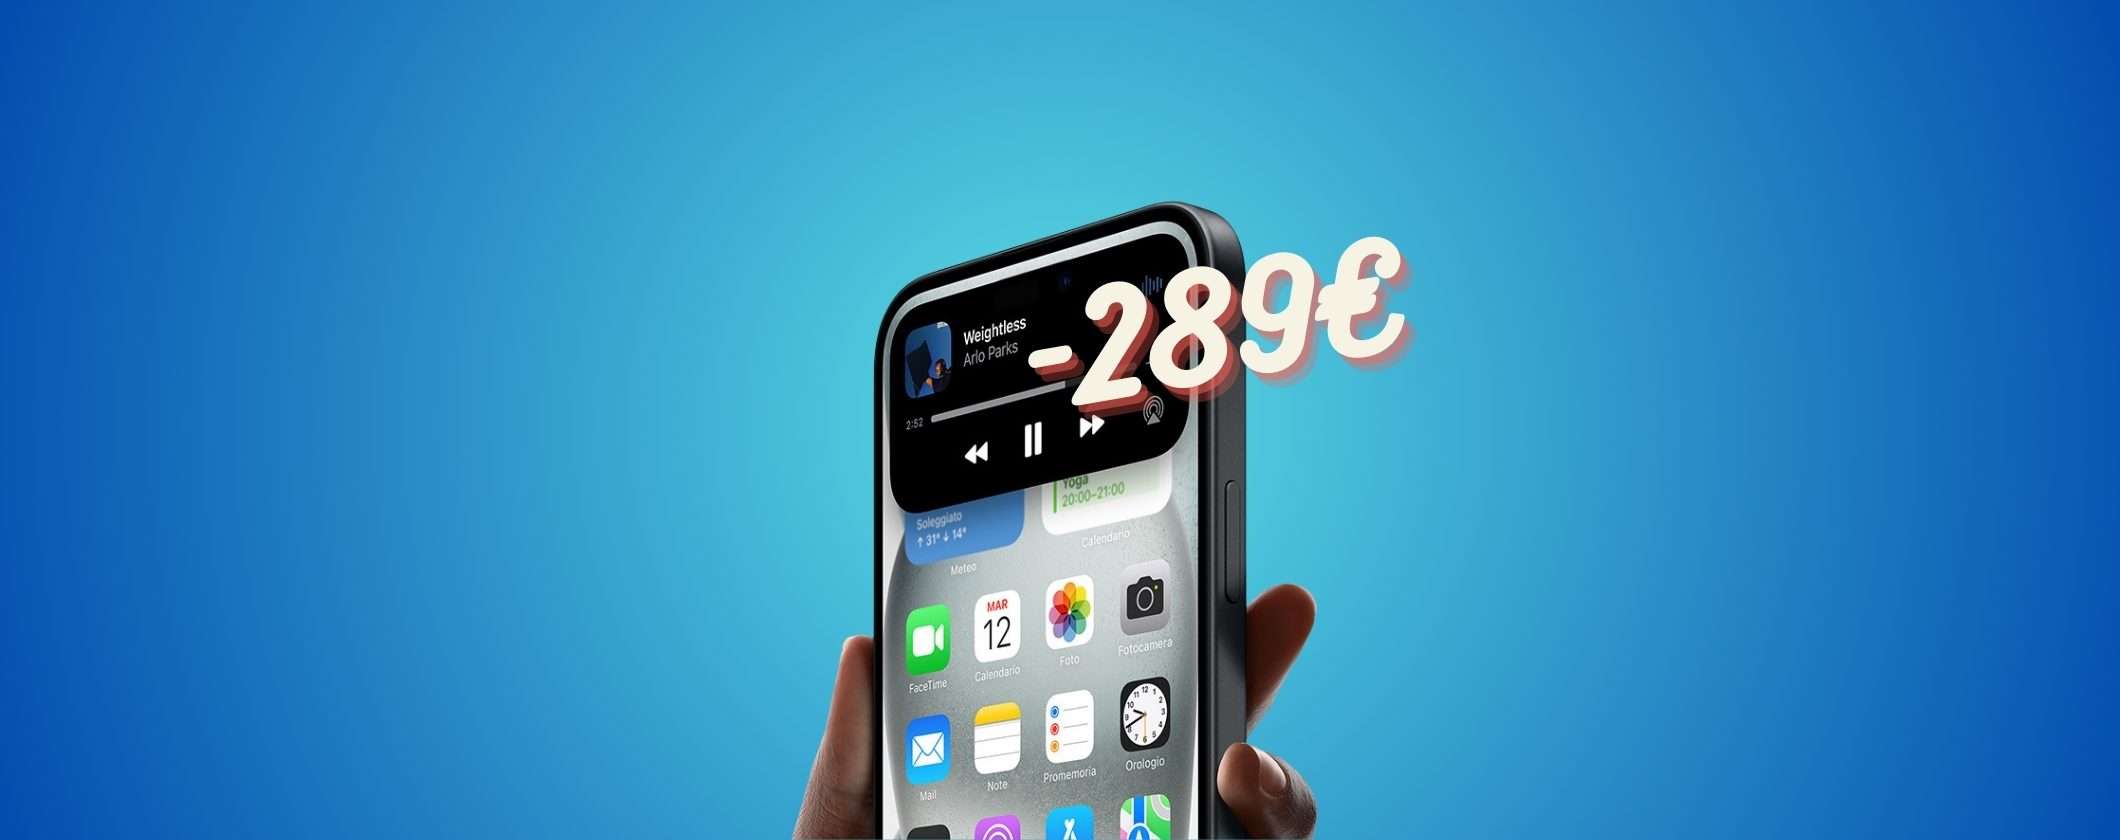 iPhone 15 a 289€ di SCONTO su eBay, scopri come ottenerlo